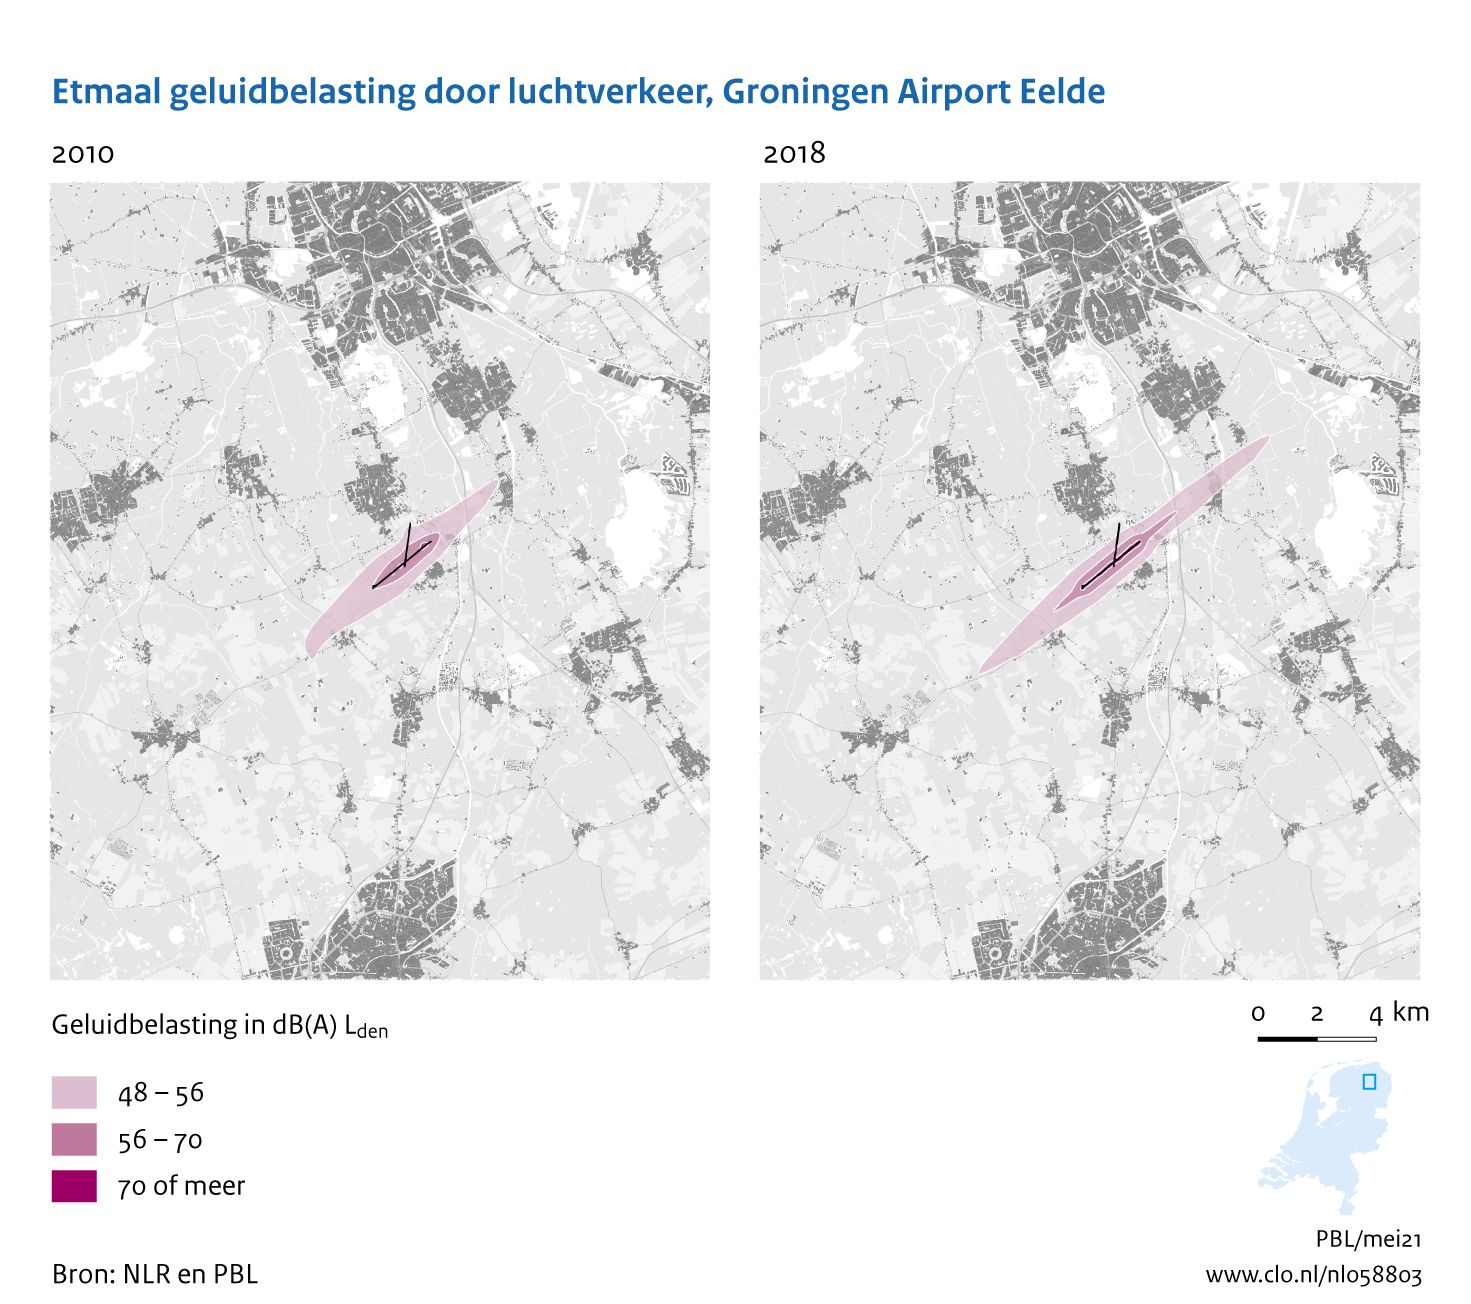 Figuur Etmaal geluidbelasting door luchtvaart, Groningen Airport Eelde, 2010-2018. In de rest van de tekst wordt deze figuur uitgebreider uitgelegd.